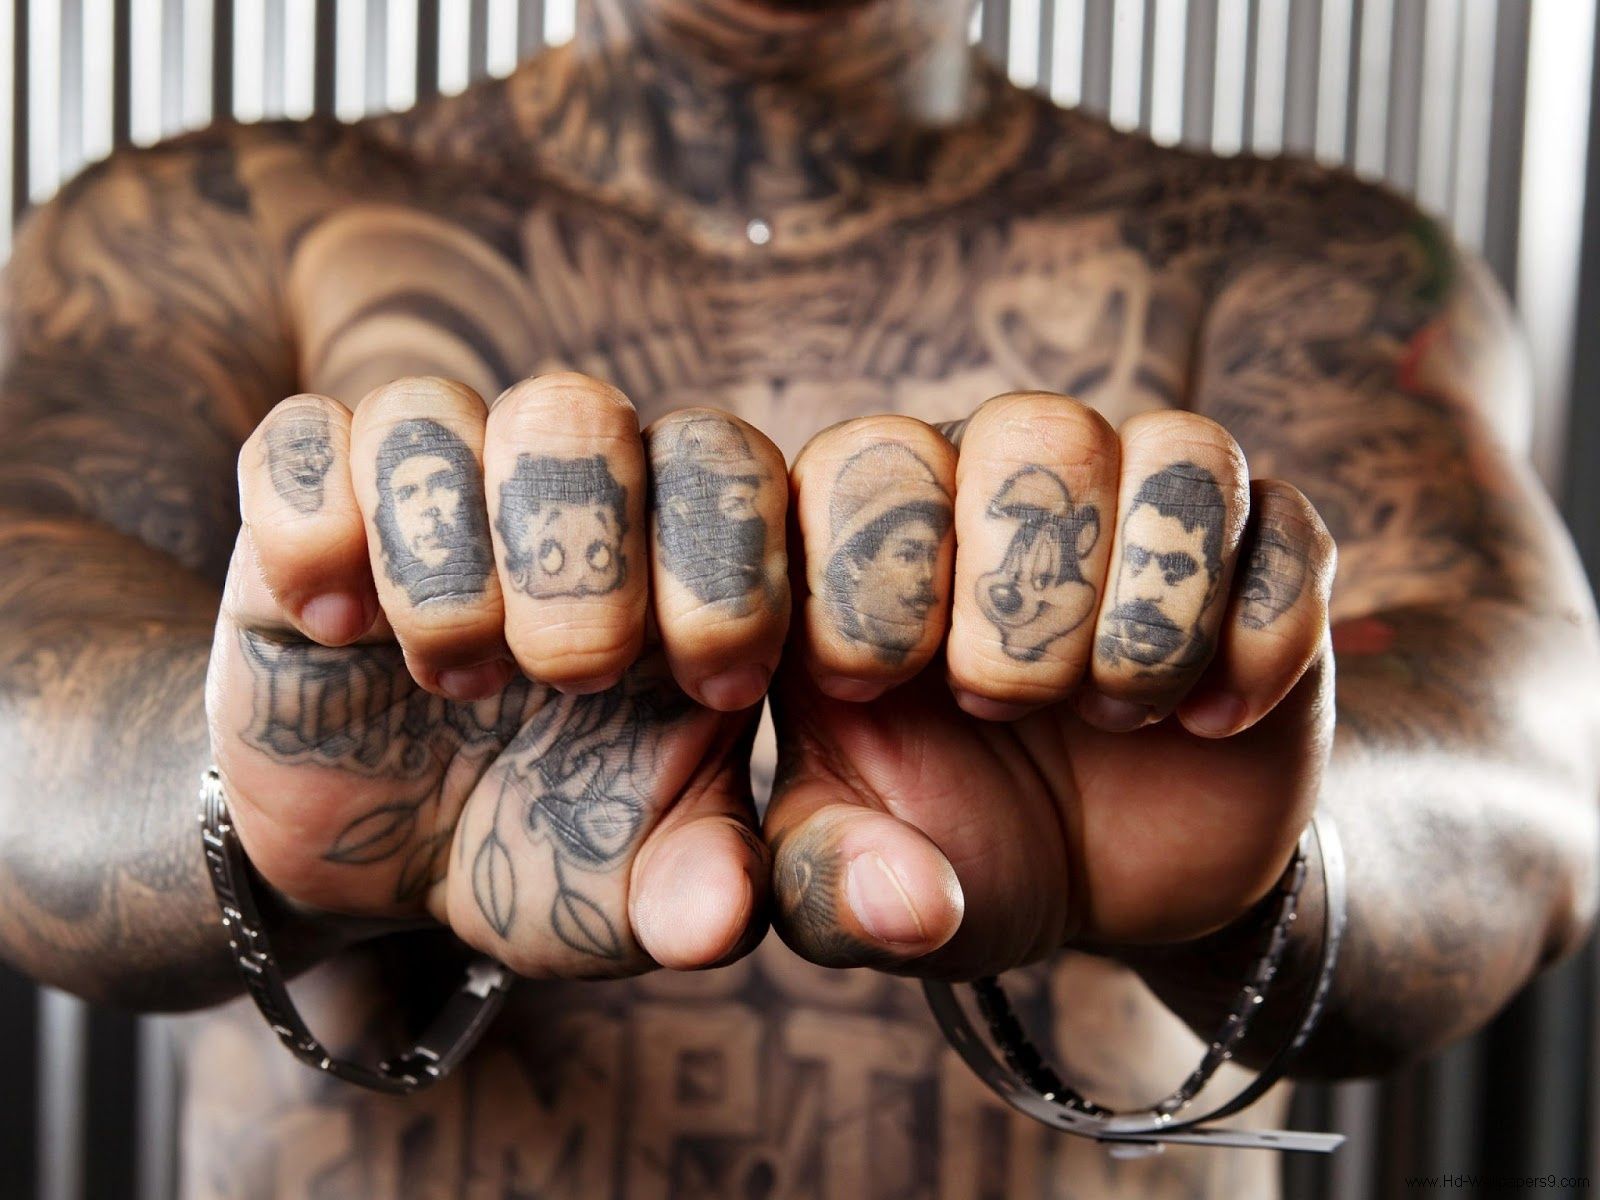 Tattoo man